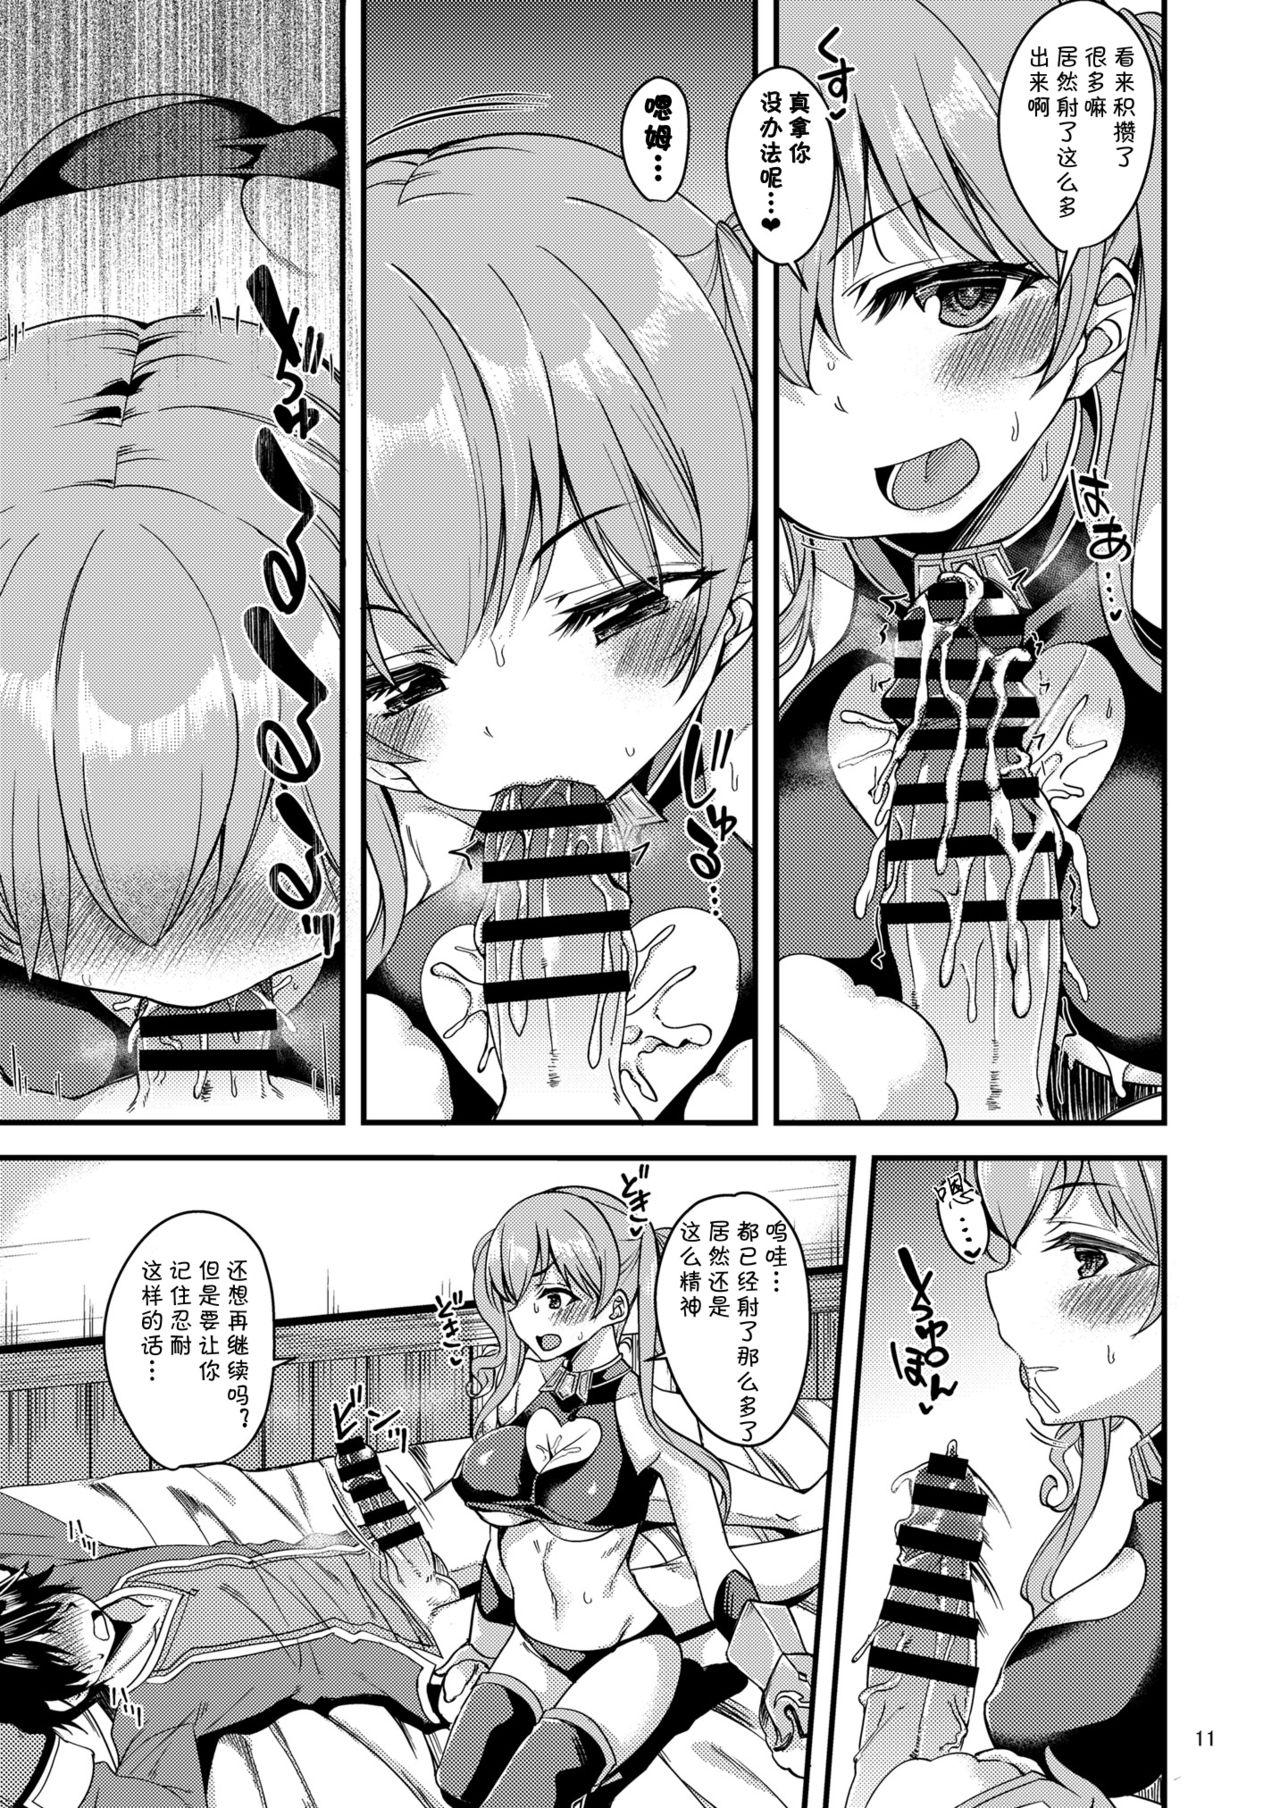 Carro Tsumugi Make Heroine Move!! 04 - Princess connect Tit - Page 12